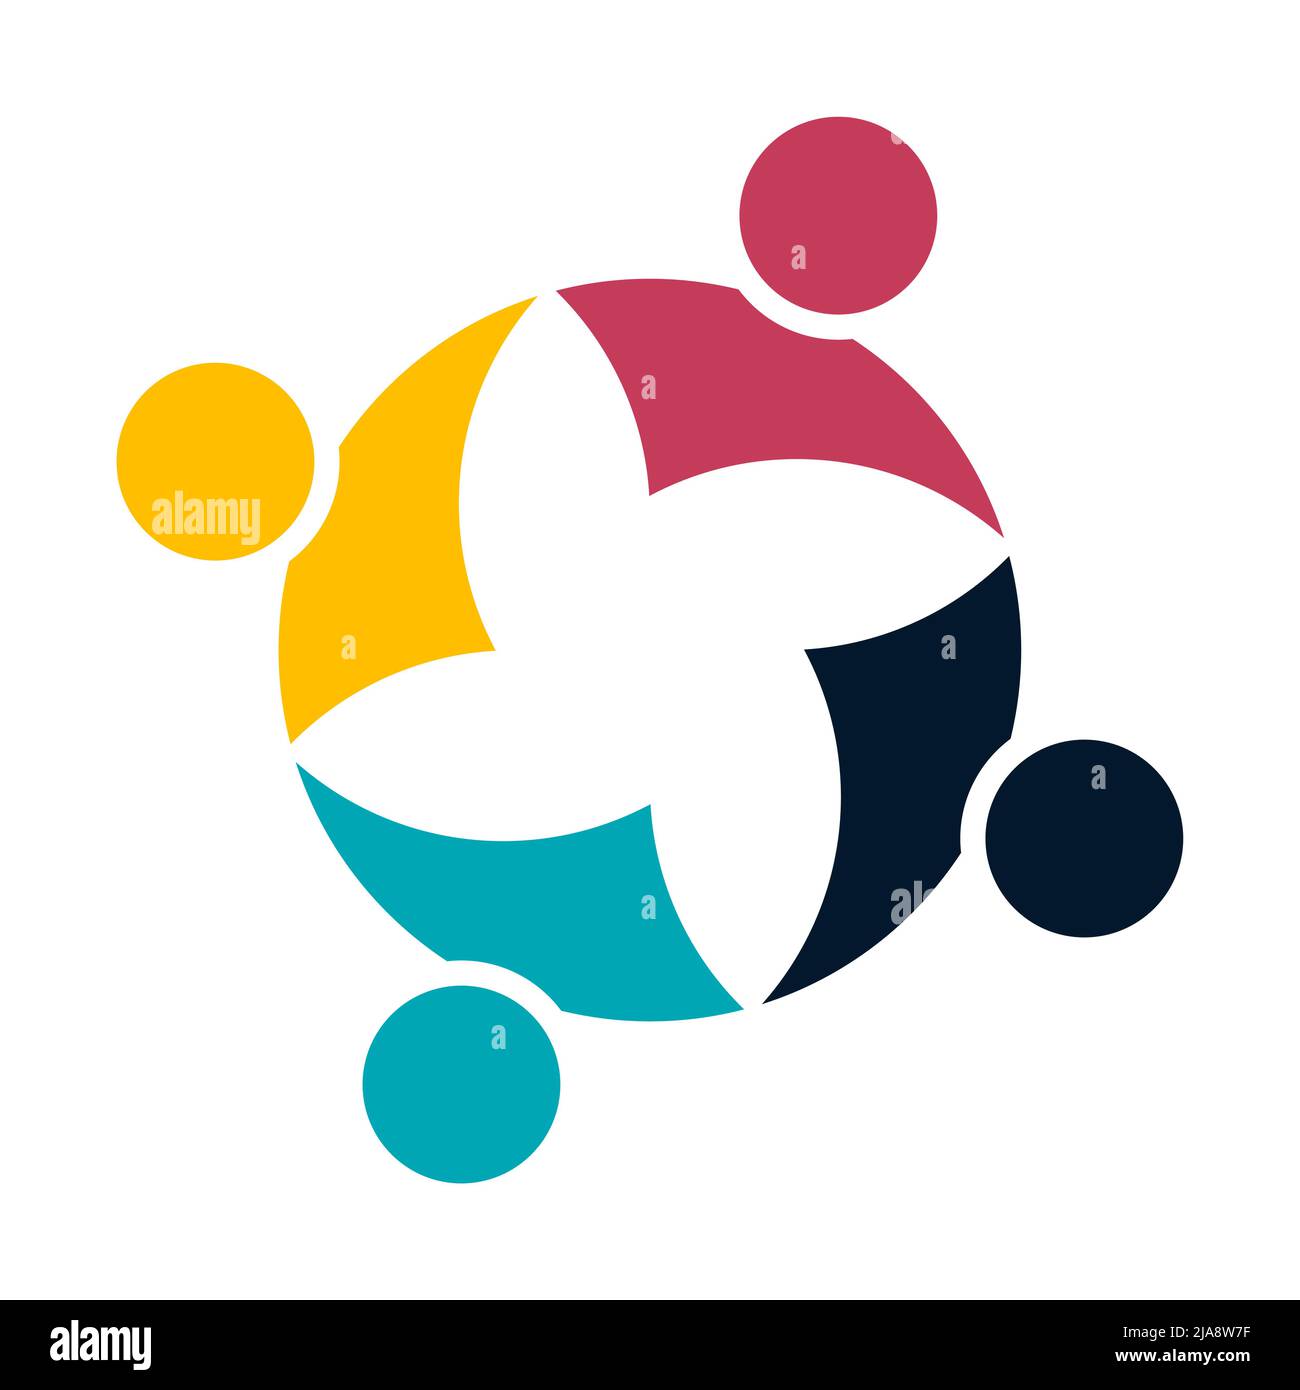 Raggruppare le persone con il logo handshake in un cerchio,Teamwork icon.Vector Illustrator Illustrazione Vettoriale